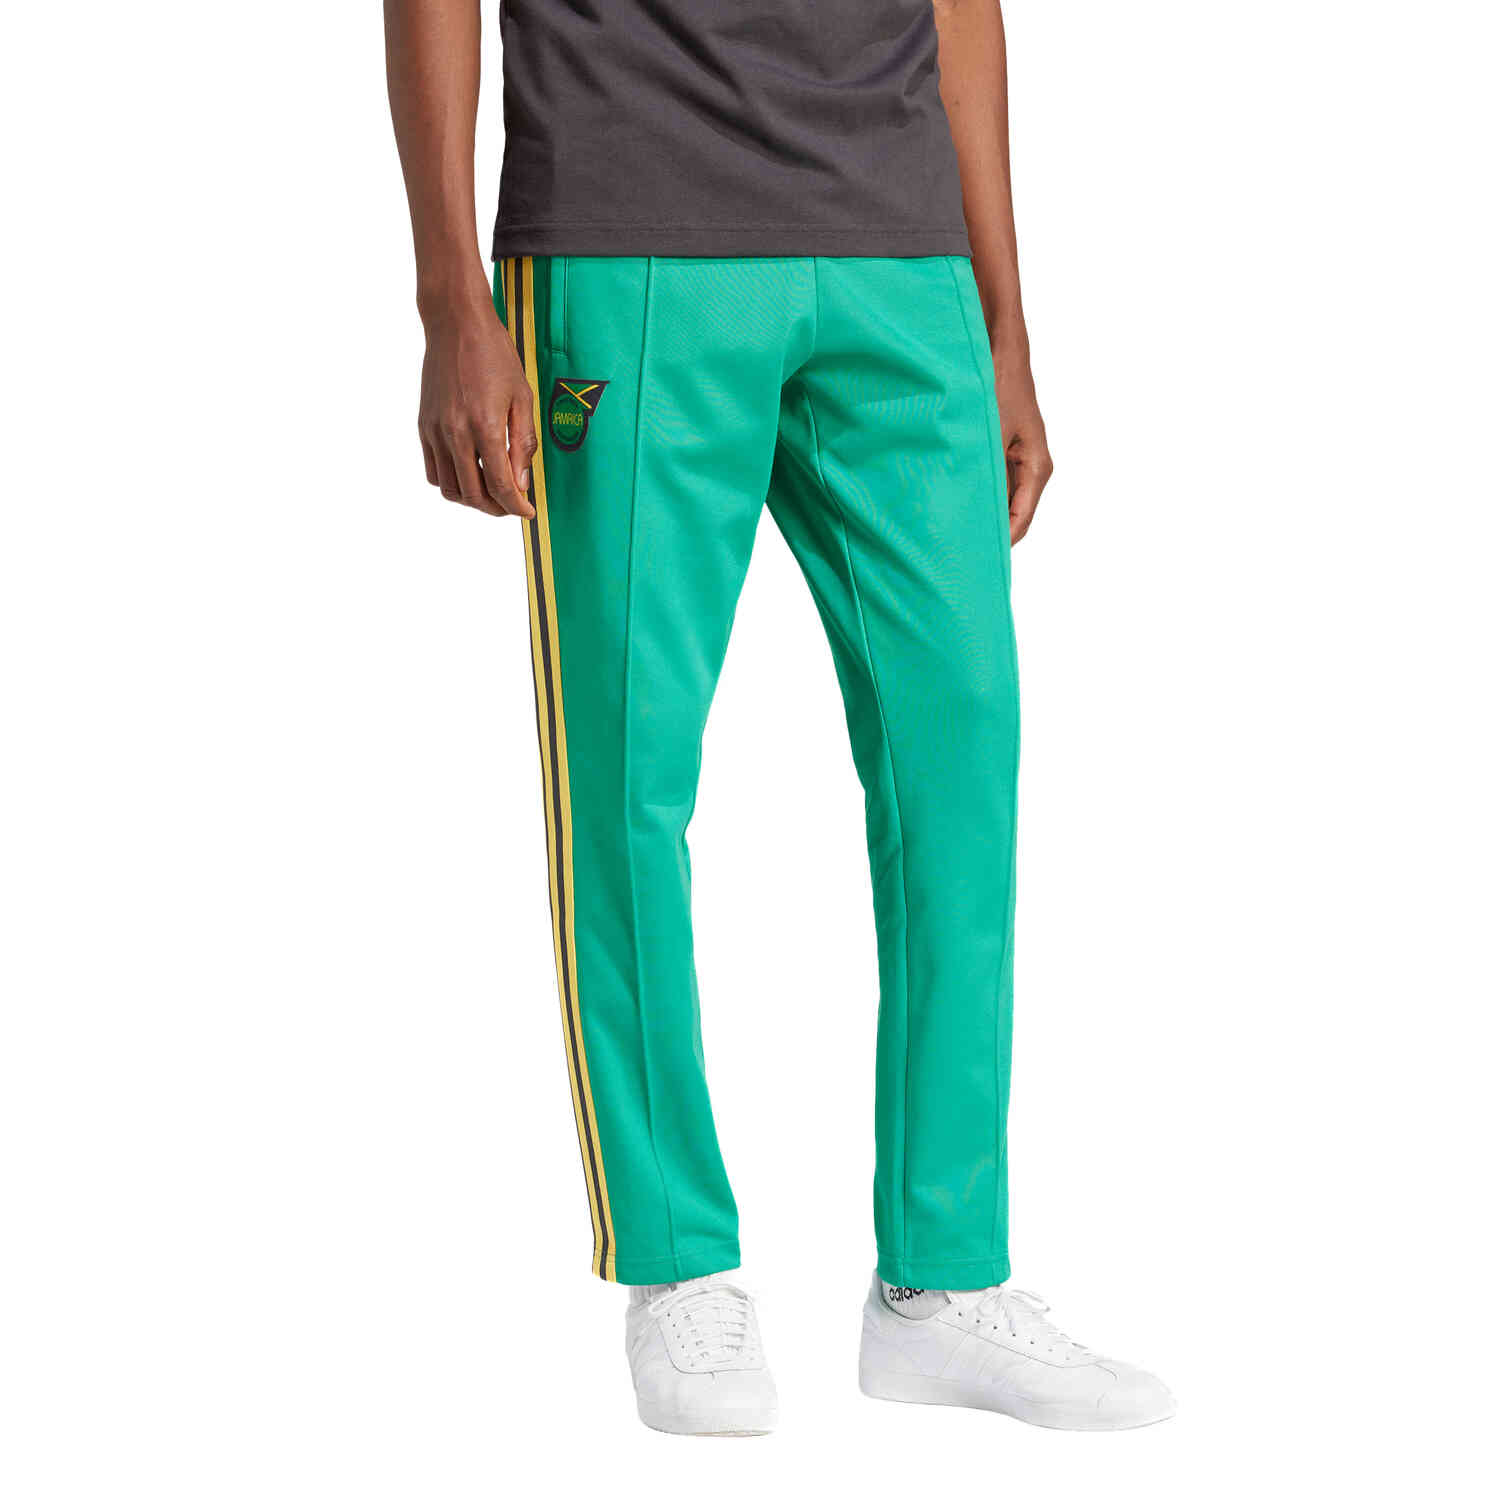 Adidas Jamaica Beckenbauer Track Pants - Court Green - SoccerPro